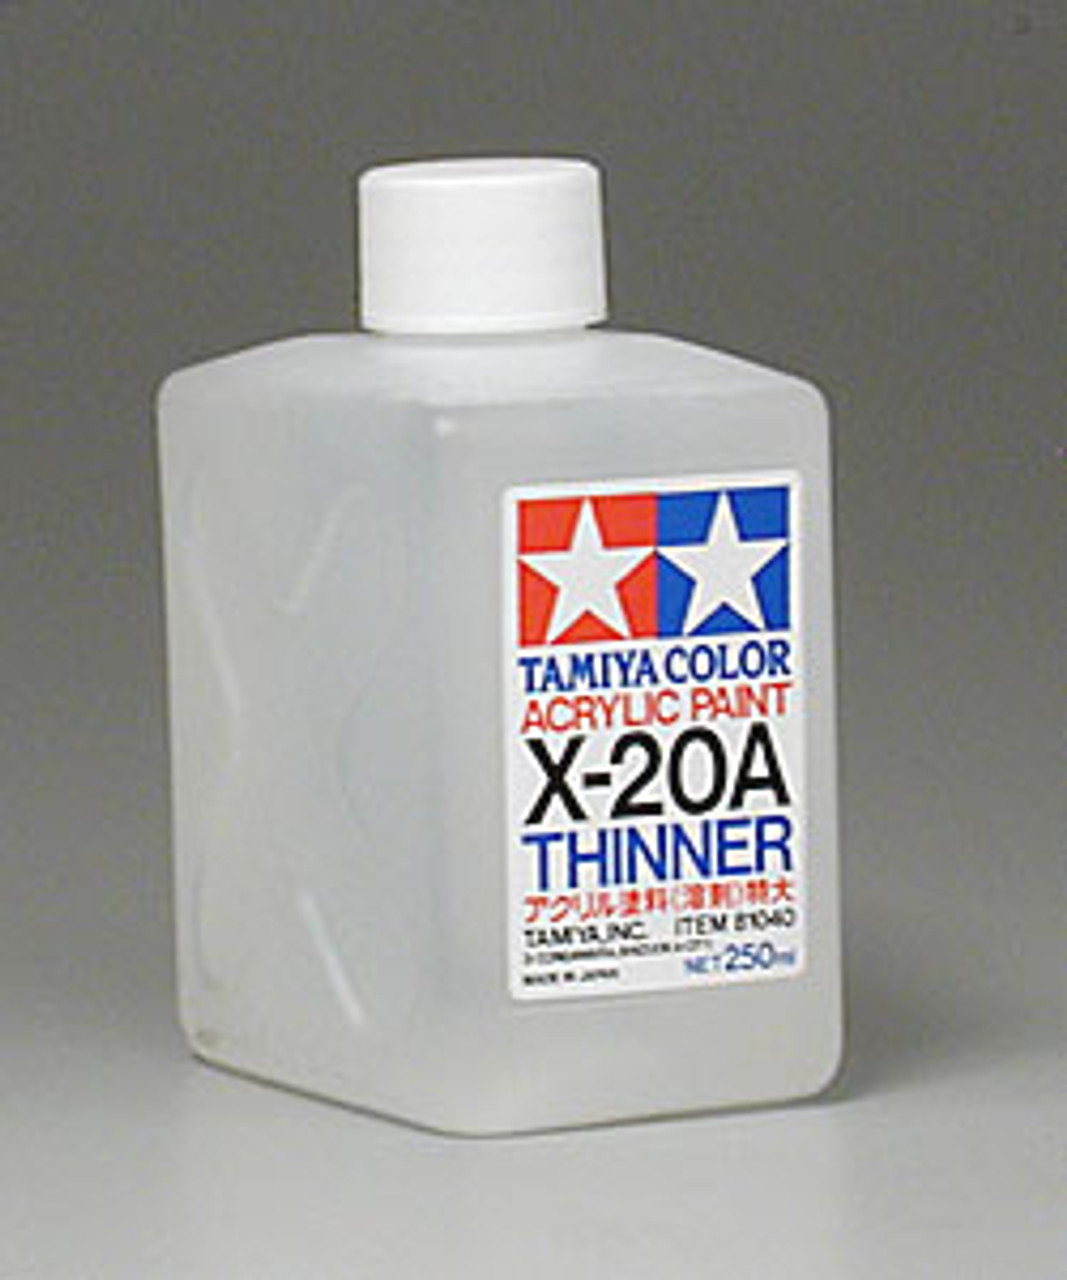 Tamiya X-20A Acrylic Paint Thinner (10ml)